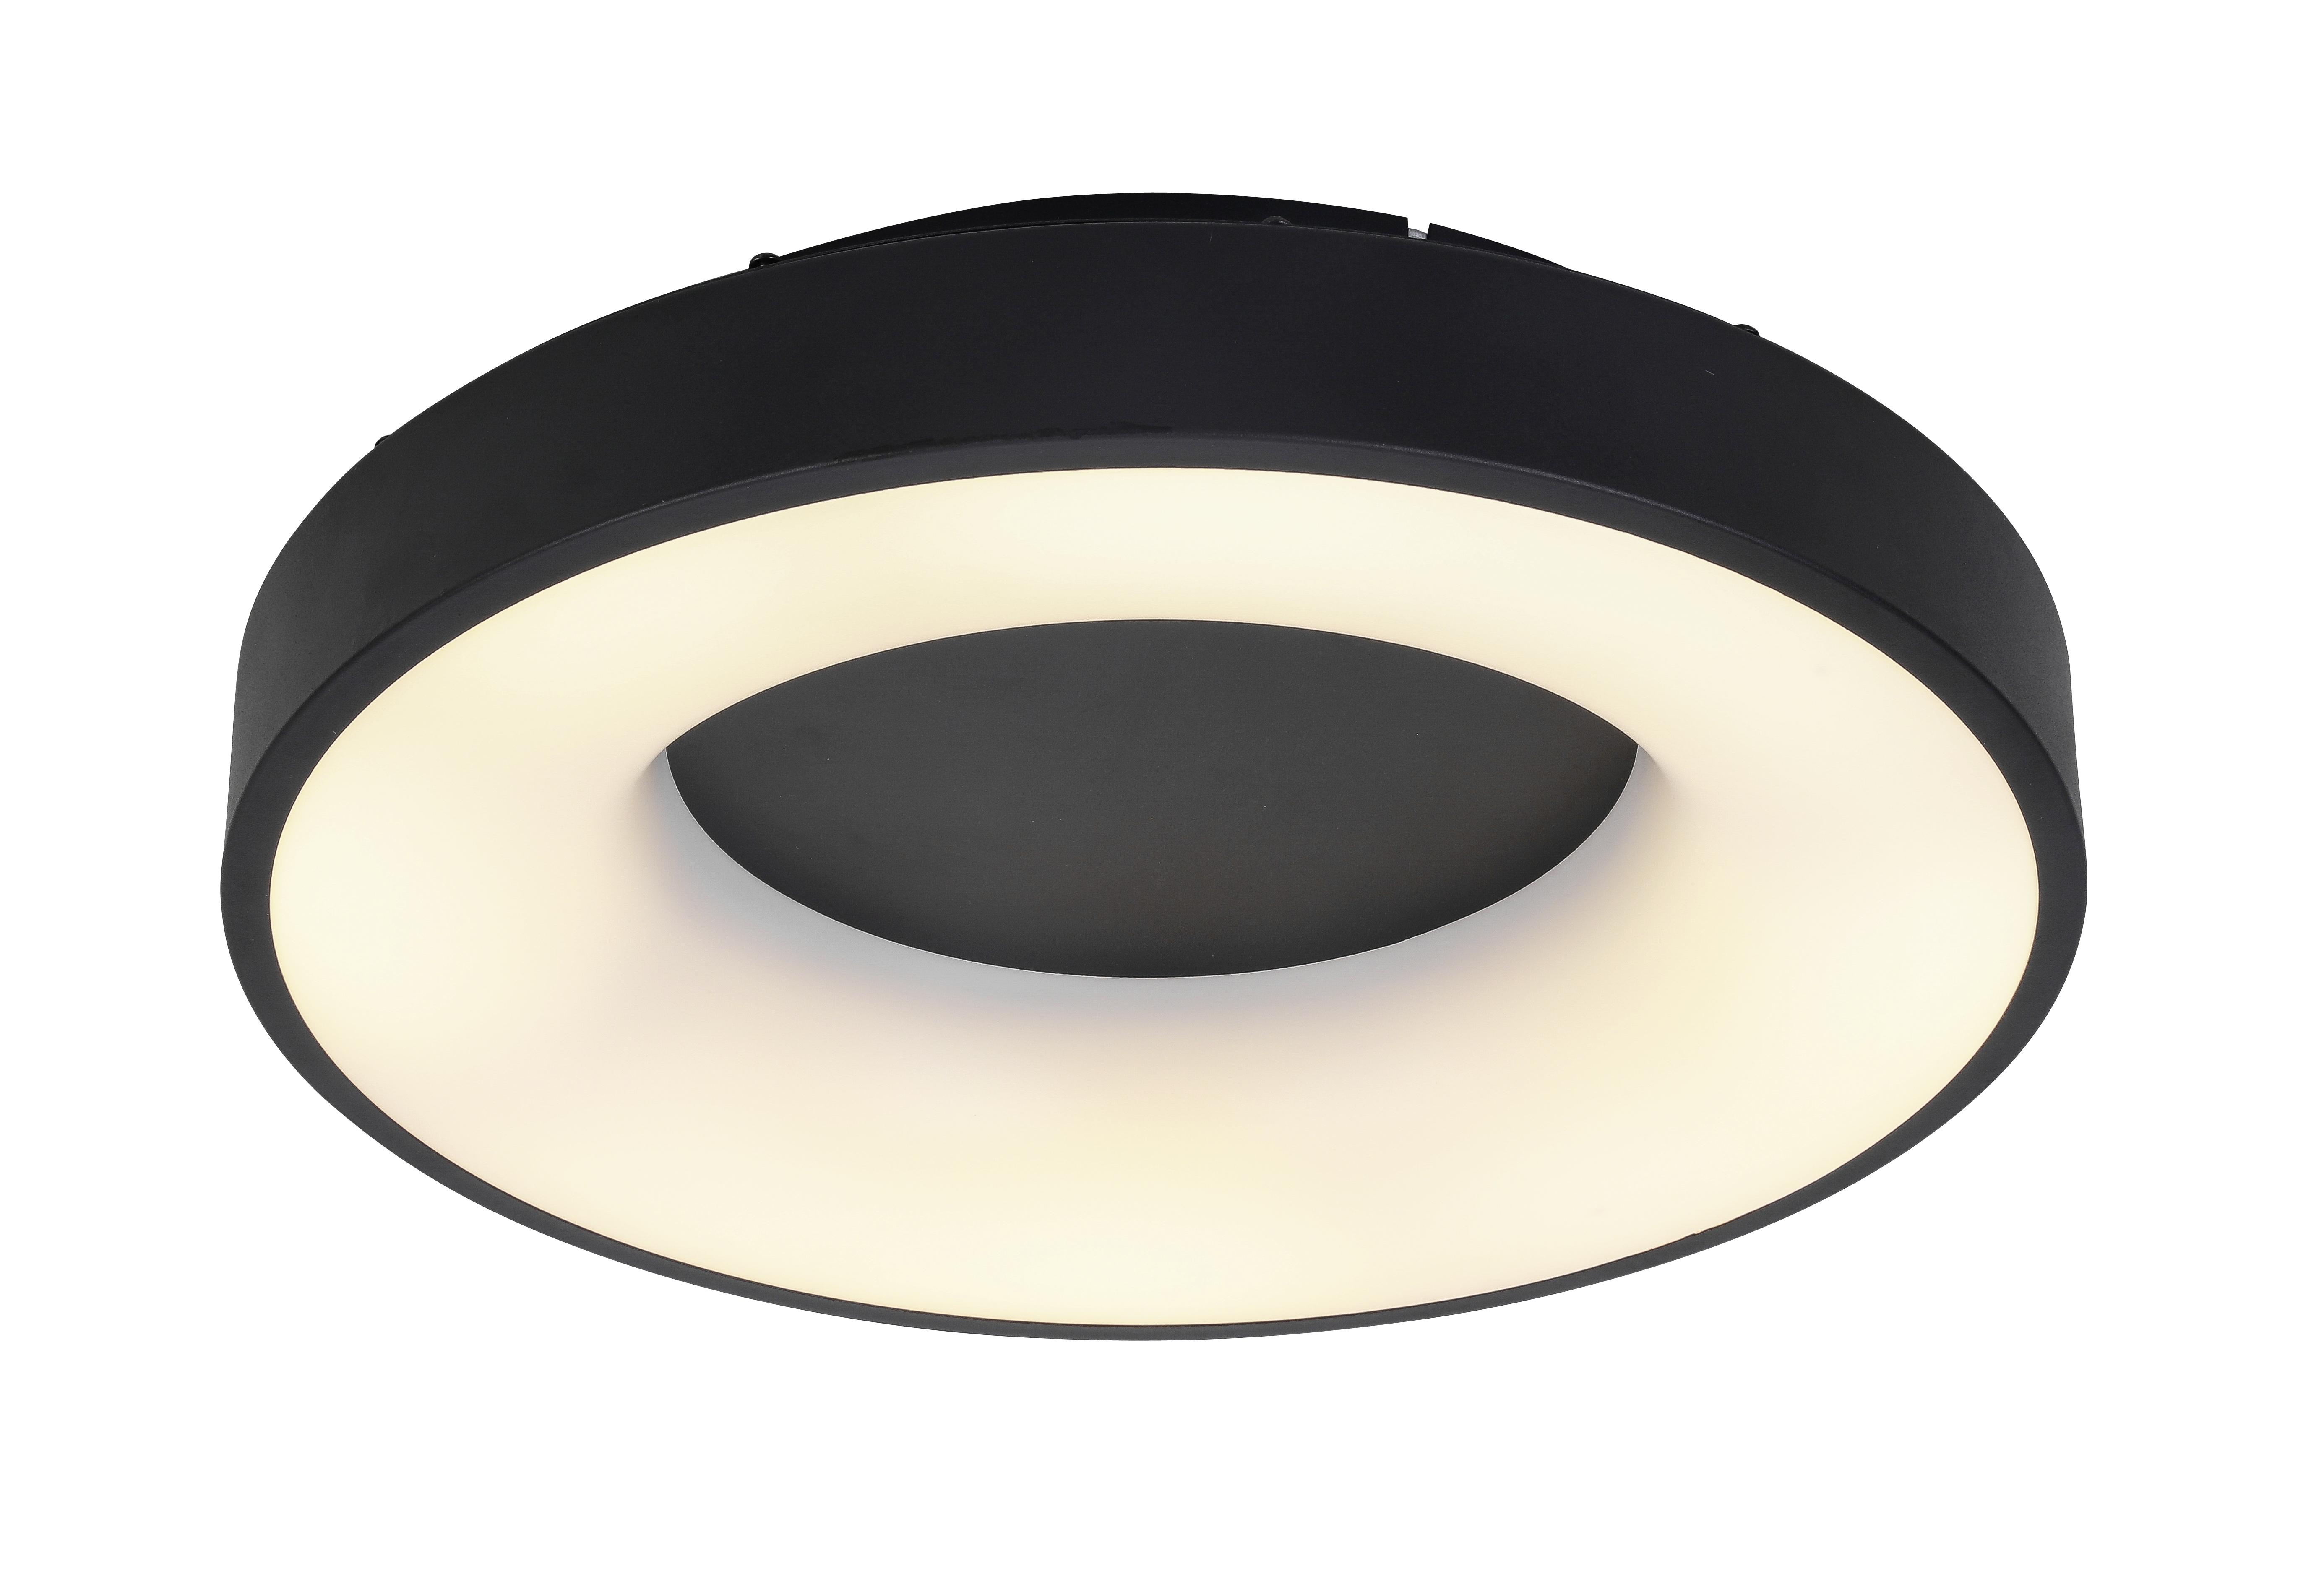 LED-Deckenleuchte Elija max. 25 Watt - Schwarz, MODERN, Kunststoff/Metall (40cm) - Modern Living